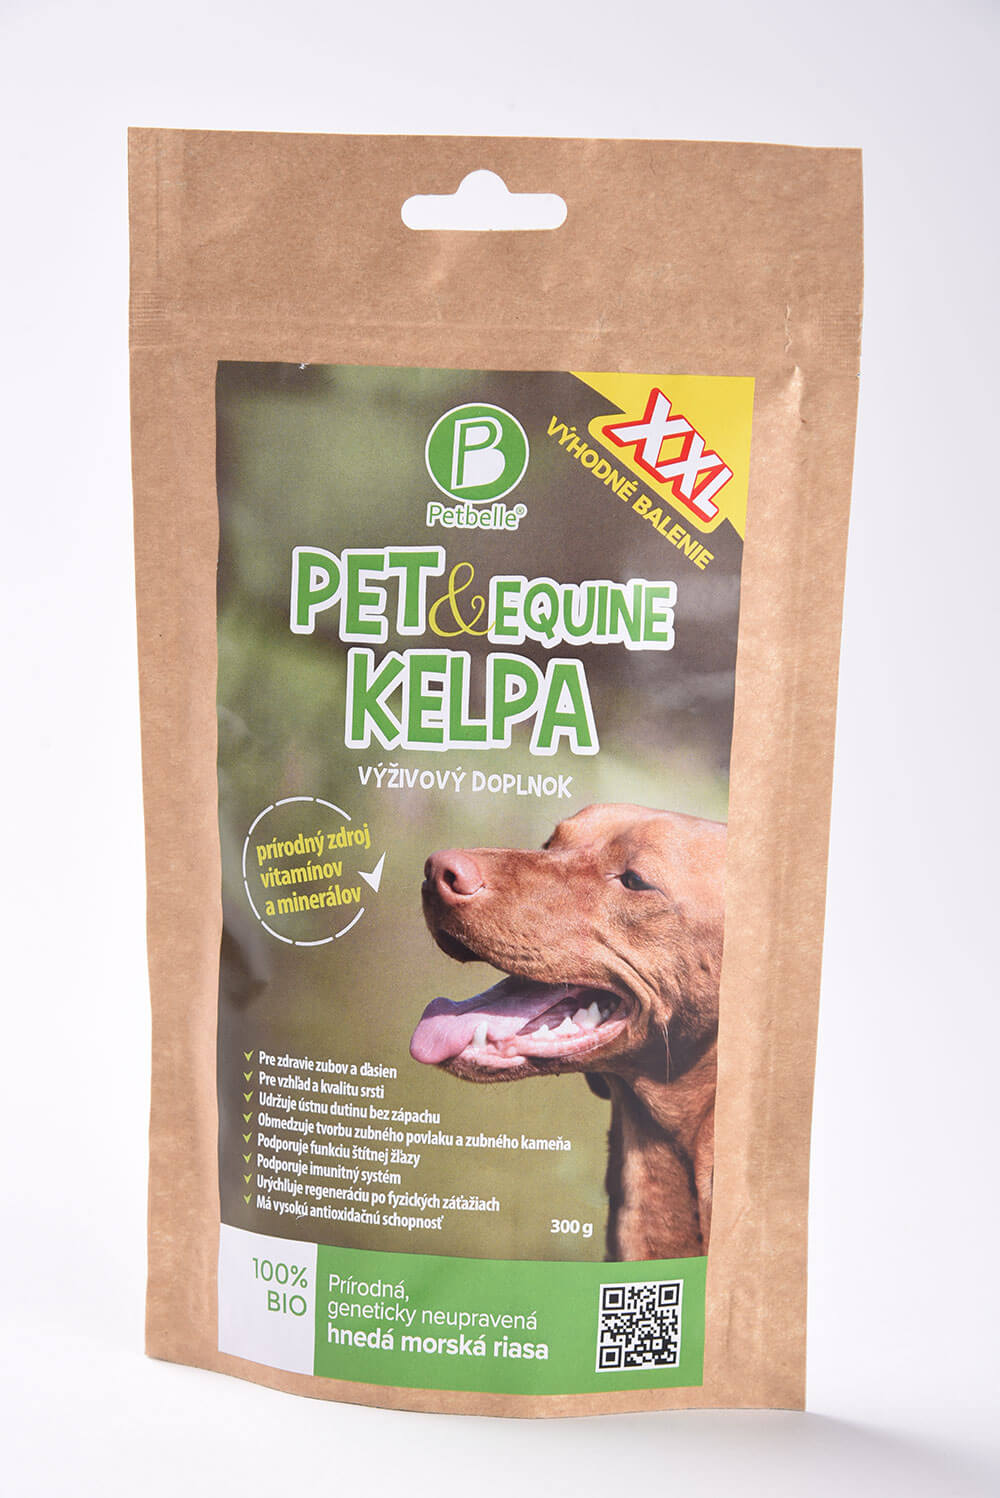 Doplnok výživy pre psa Petbelle Pet & Equine Kelpa - prírodný zdroj vitamínov a minerálov 300 g